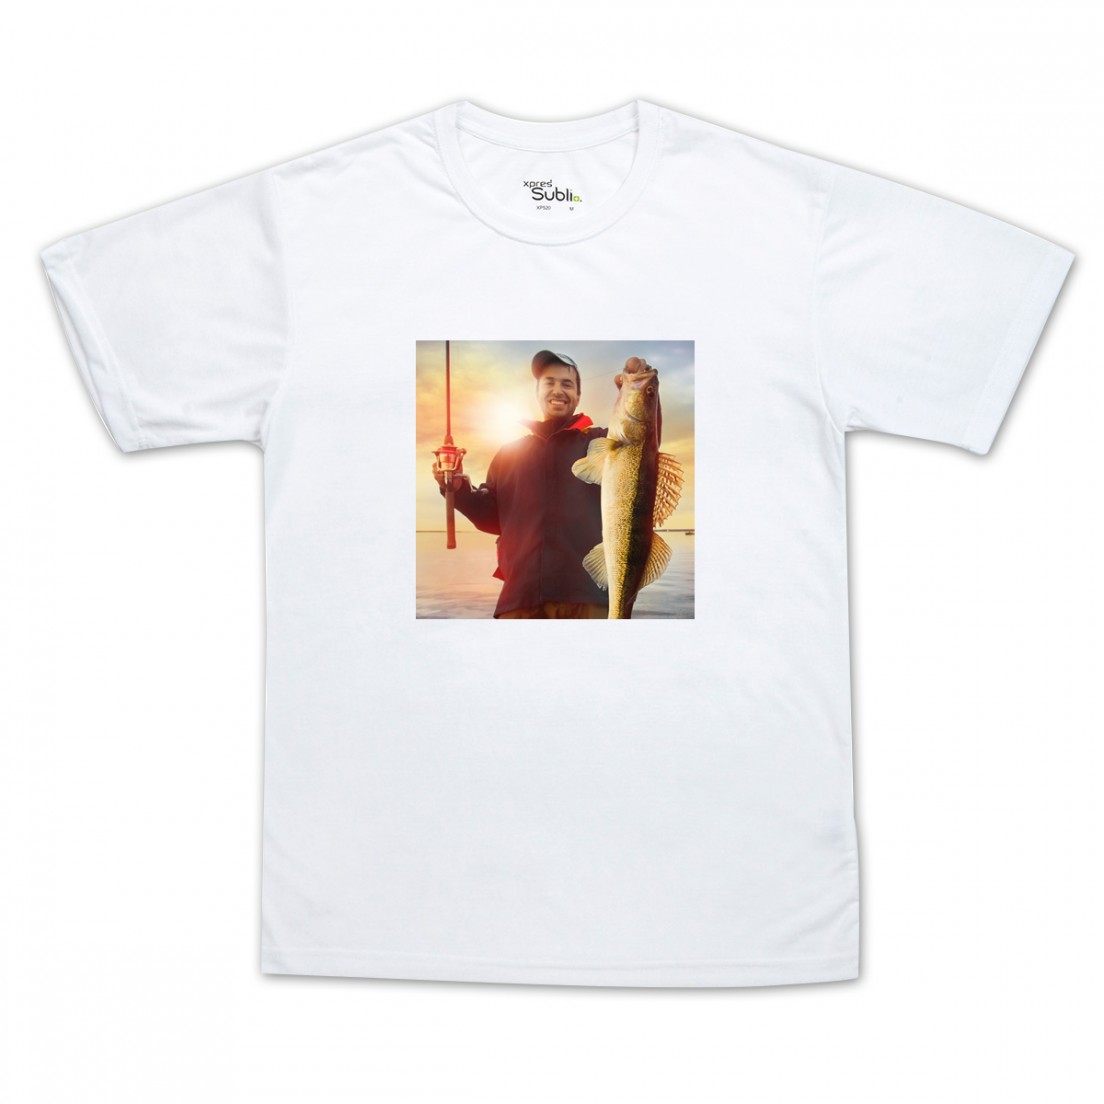 Camiseta para chico con impresión de foto personal